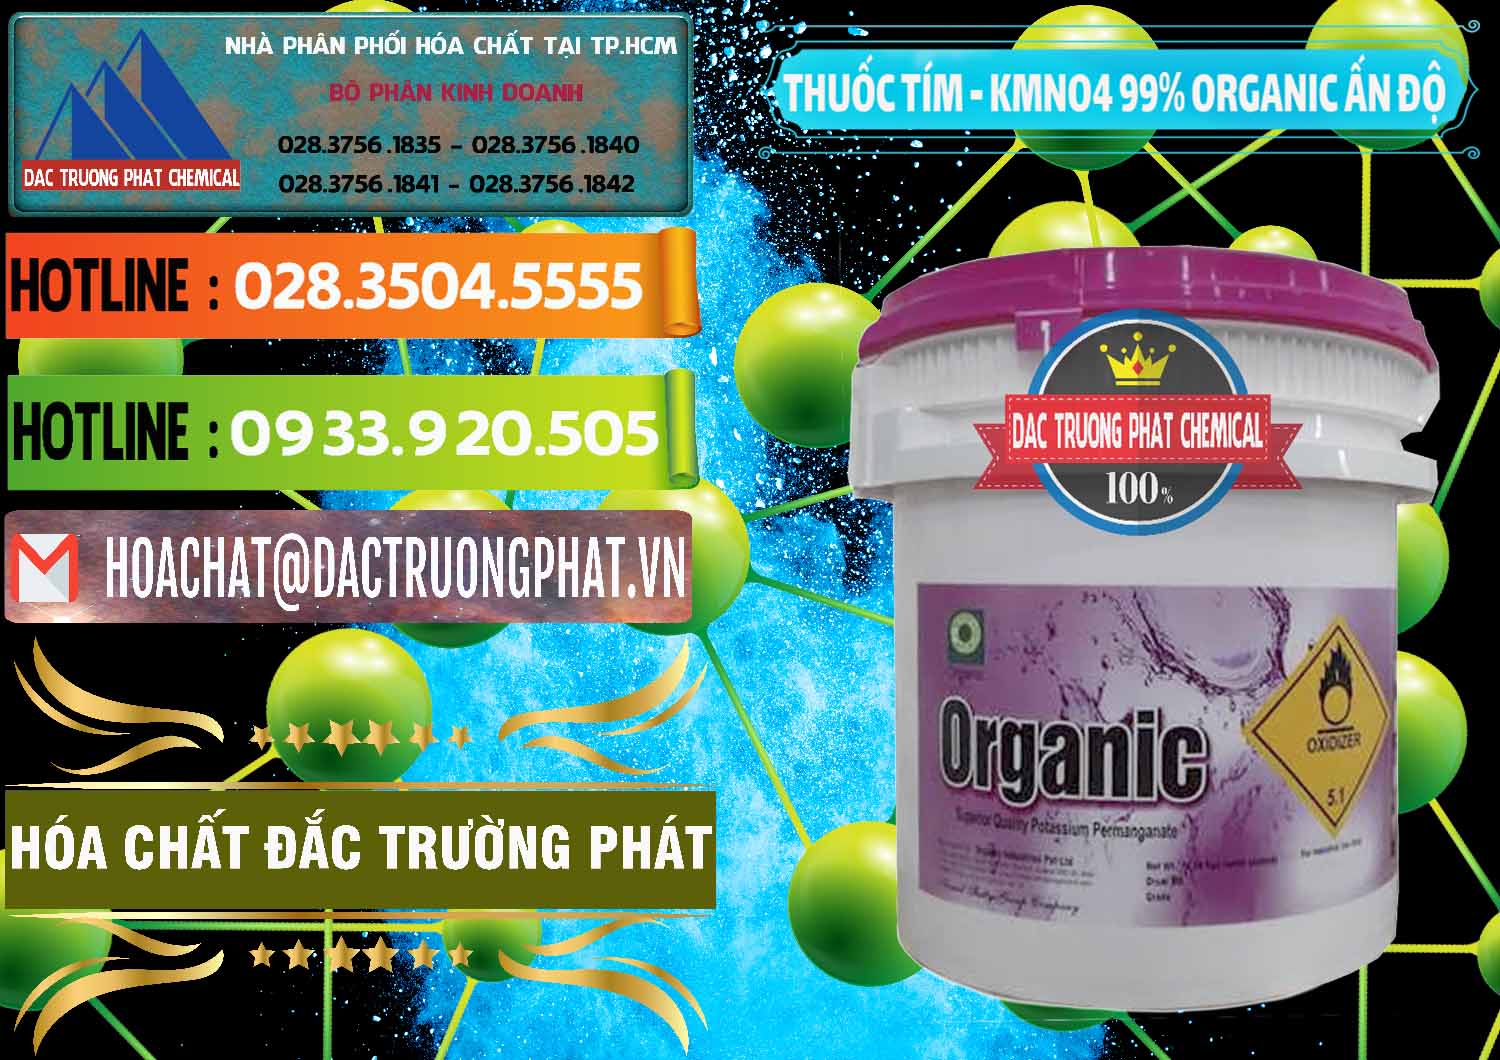 Nơi kinh doanh - bán Thuốc Tím - KMNO4 99% Organic Ấn Độ India - 0216 - Nhà phân phối và bán hóa chất tại TP.HCM - cungcaphoachat.com.vn